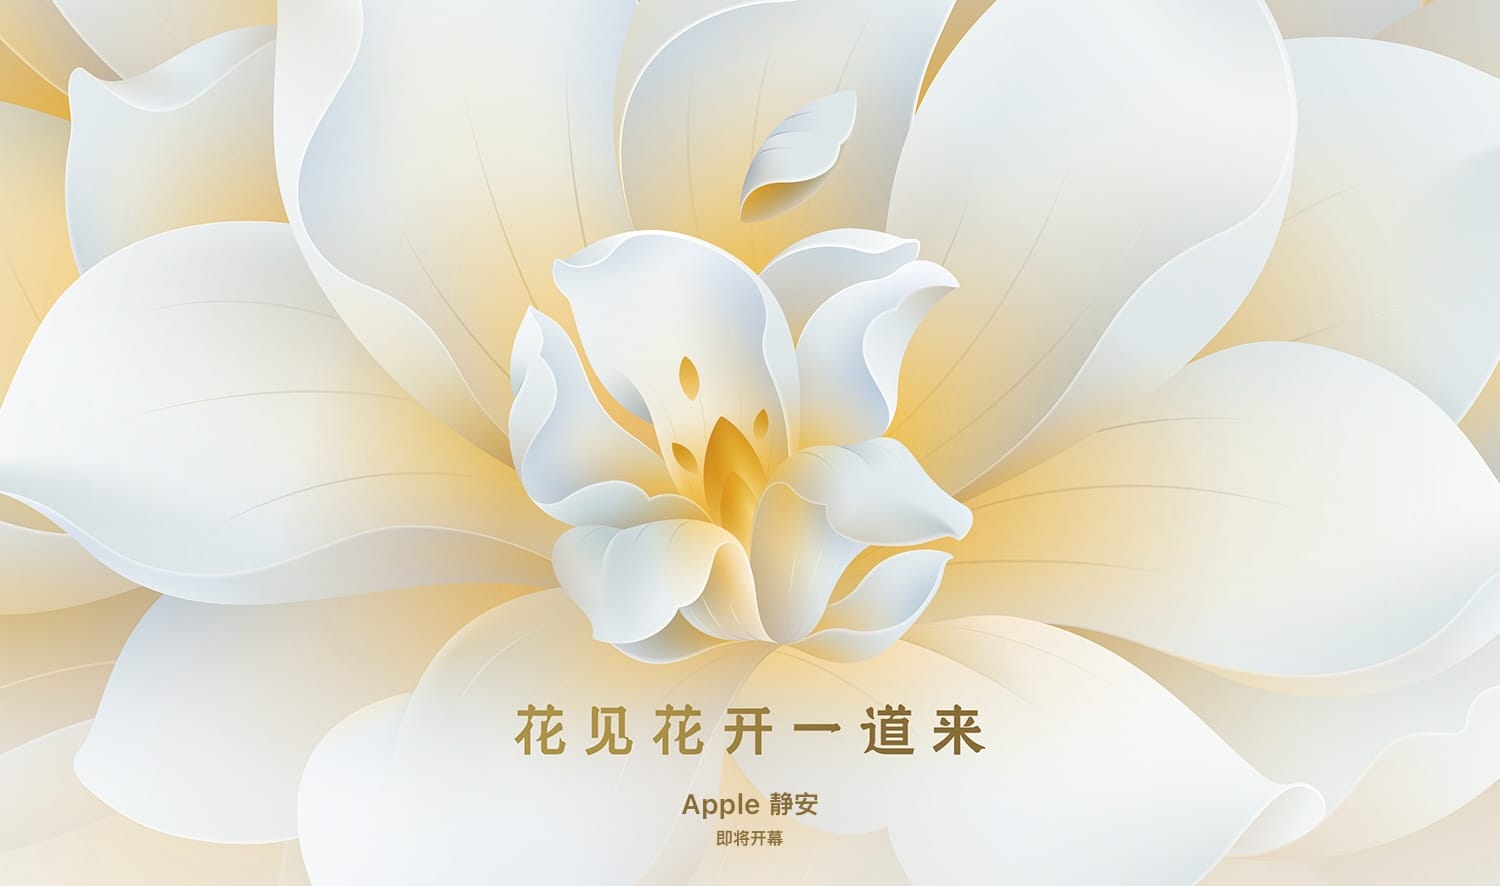 Apple、上海に新しい直営店「Apple 静安」をオープン